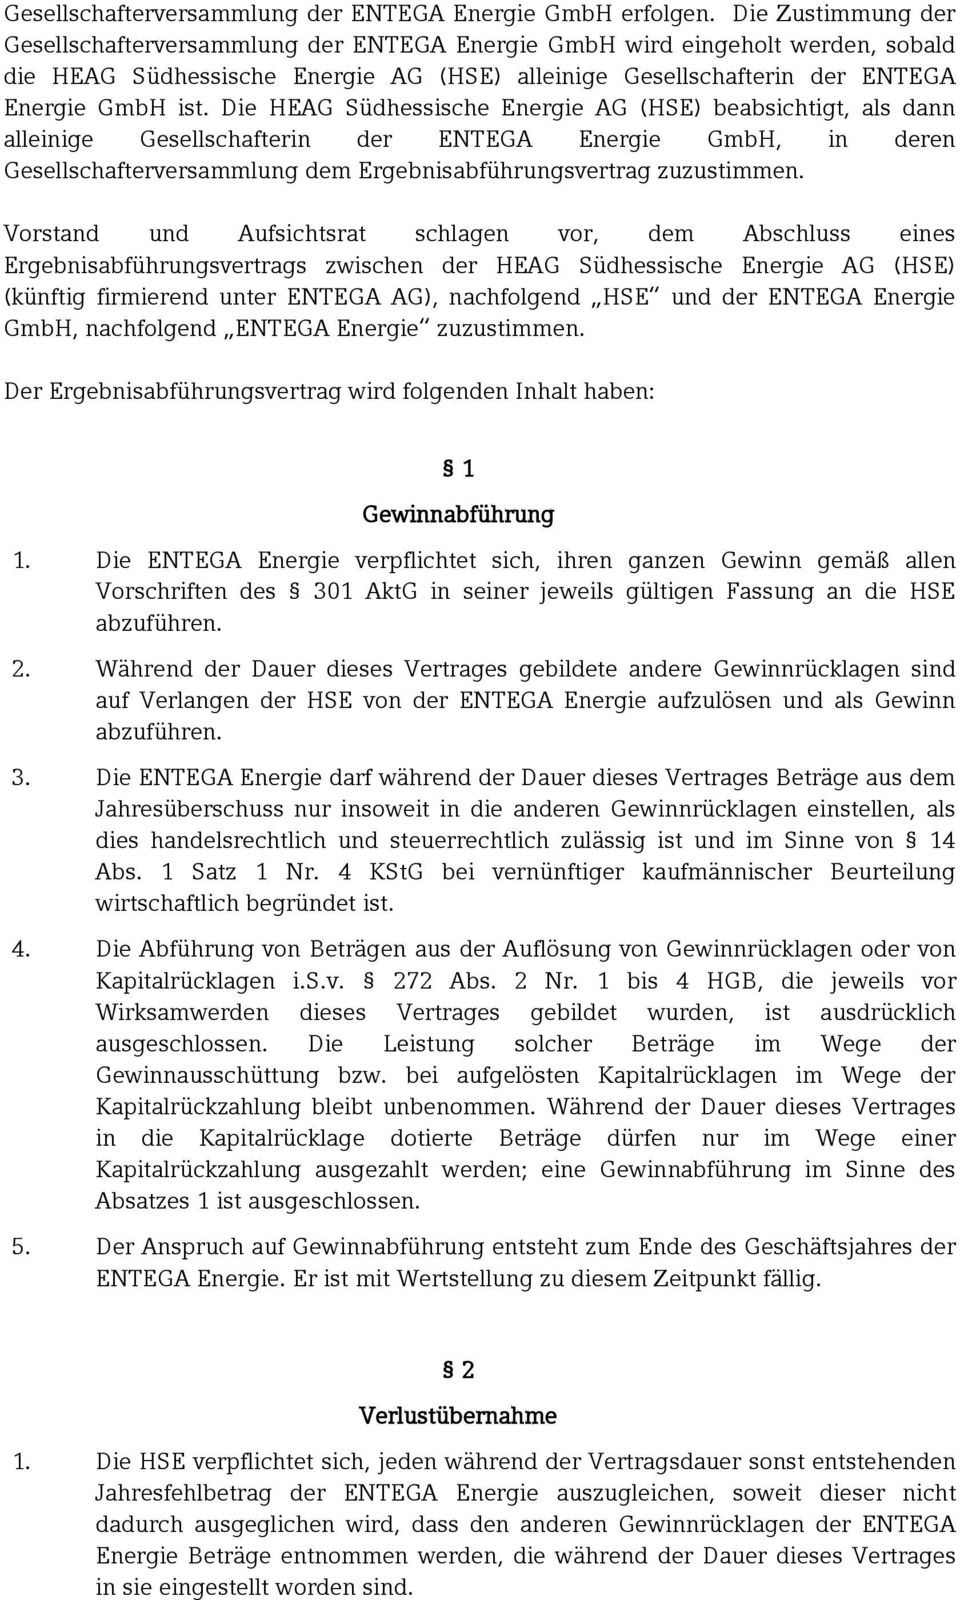 Die beabsichtigt, als dann alleinige Gesellschafterin der ENTEGA Energie GmbH, in deren Gesellschafterversammlung dem Ergebnisabführungsvertrag zuzustimmen.